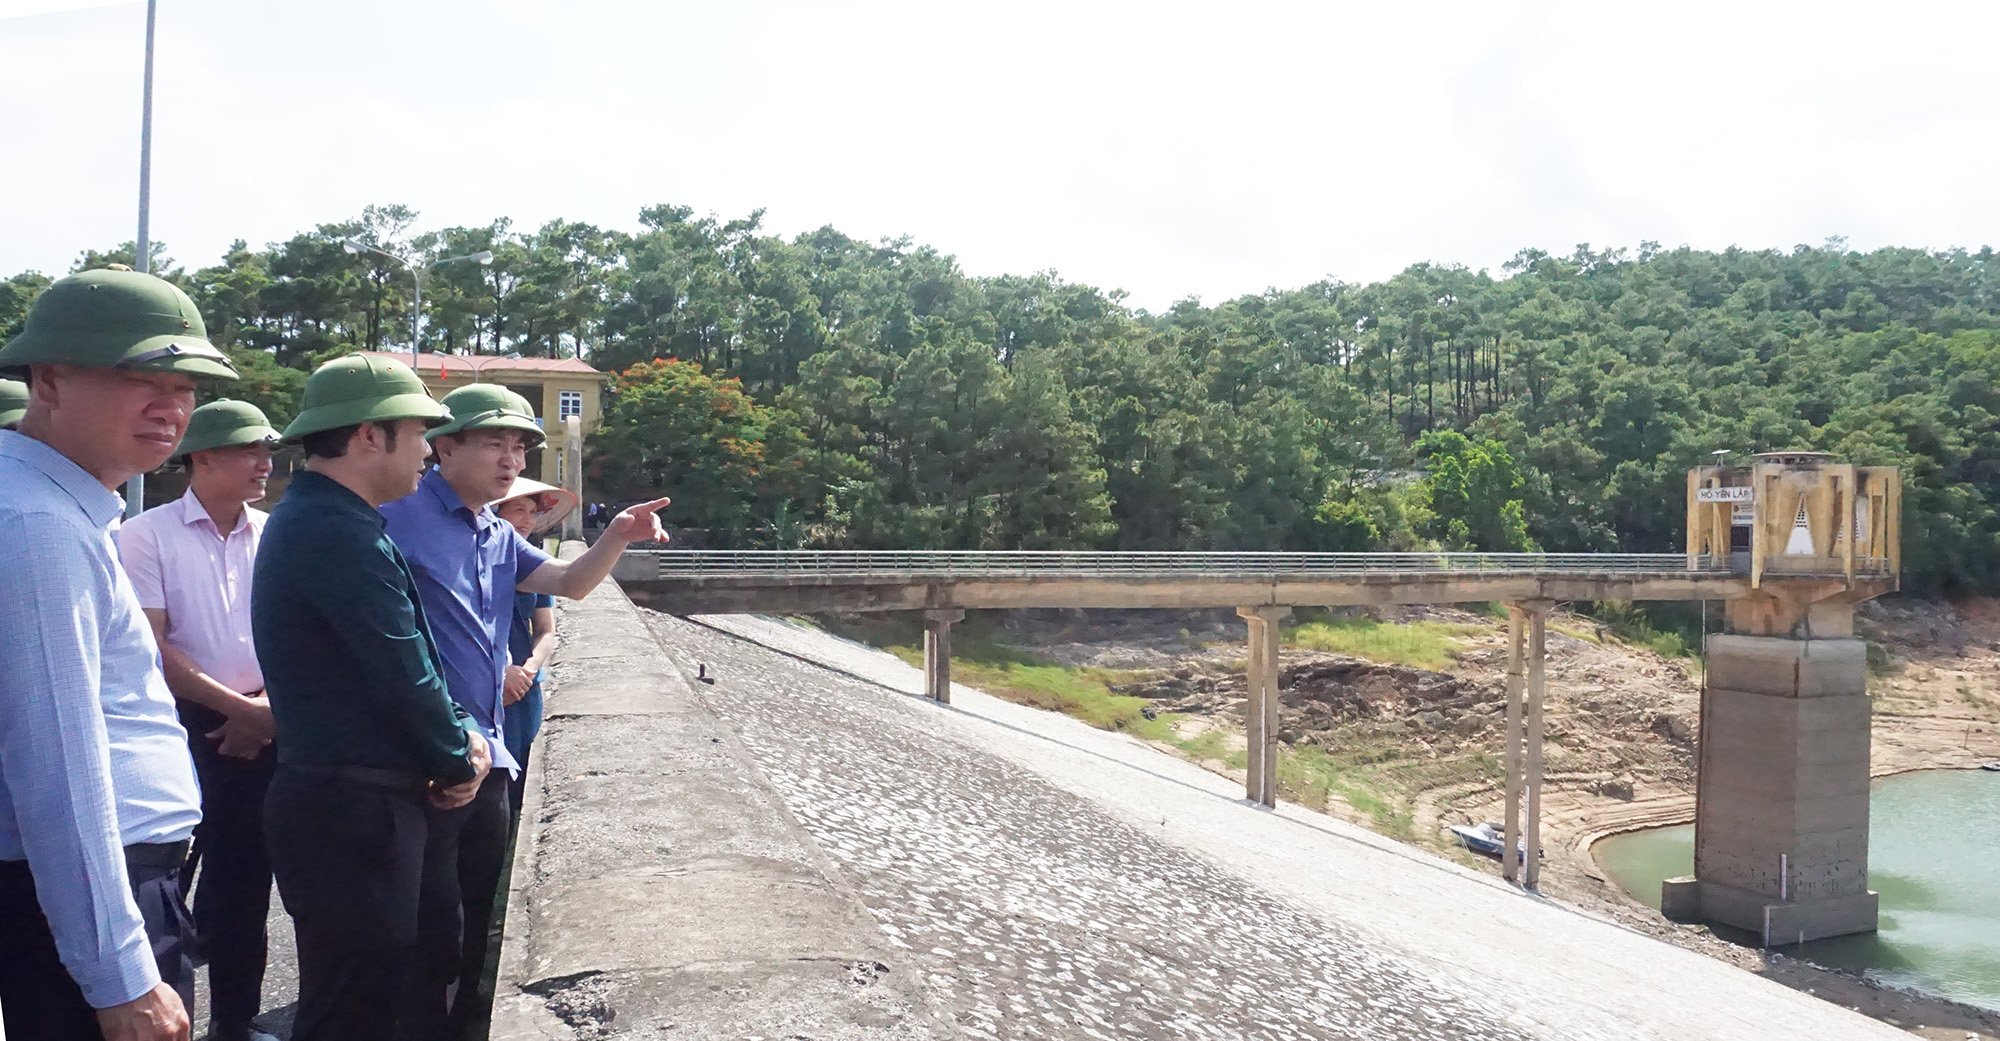 Đồng chí Ngô Hoàng Ngân, Phó Bí thư Thường trực Tỉnh ủy kiểm tra hoạt động cấp nước tại hồ Yên Lập (TP Hạ Long), tháng 7/2020. Ảnh: Minh Đức